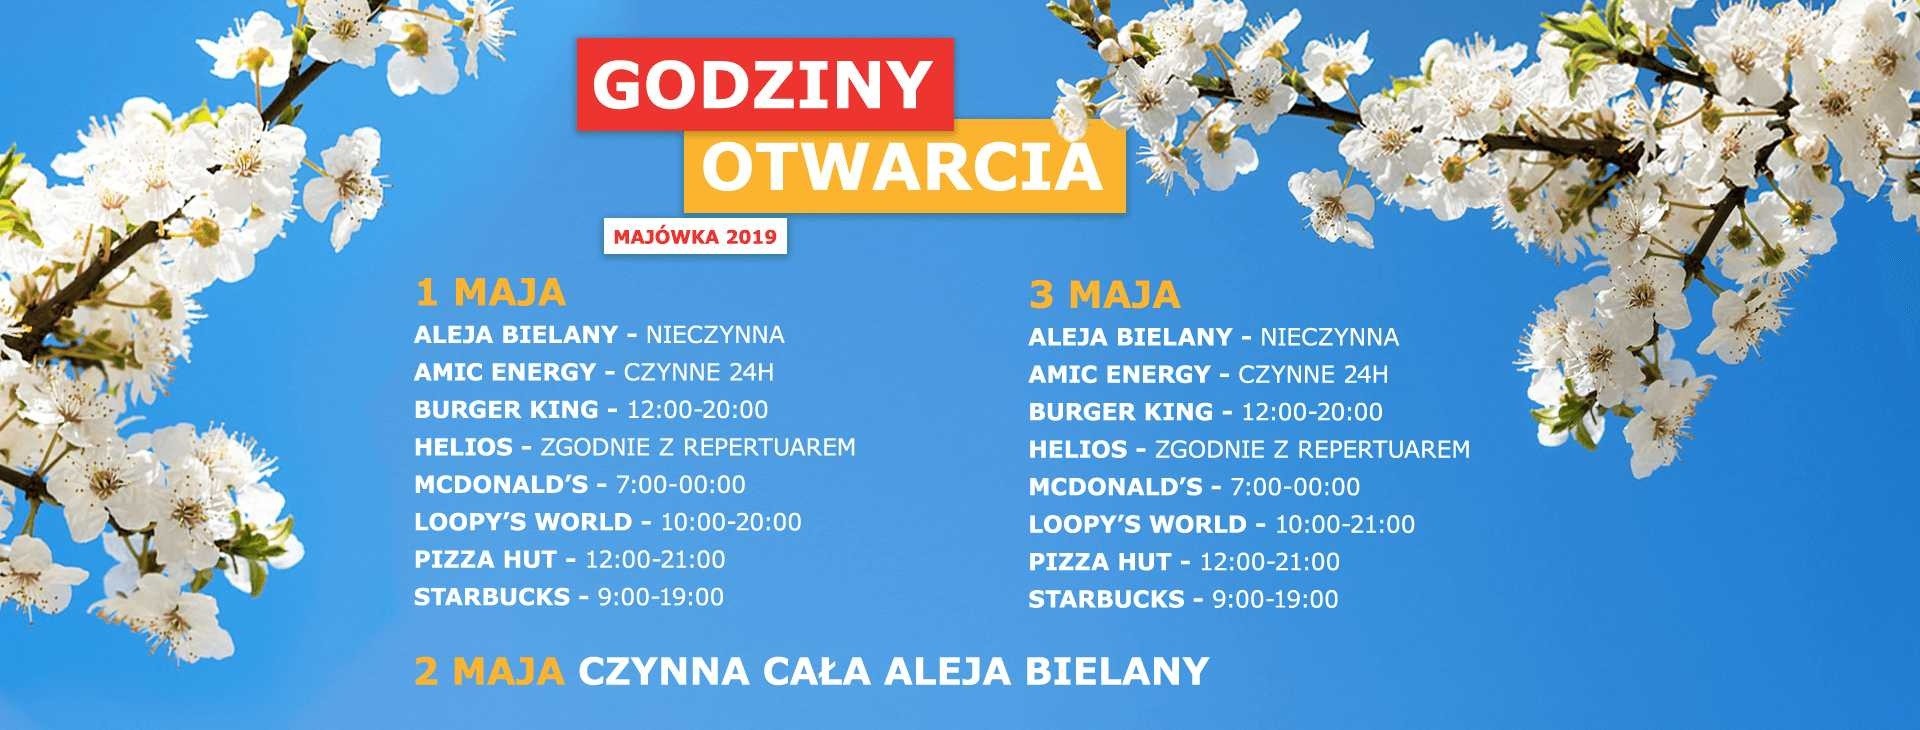 Aleja Bielany Wrocław godziny otwarcia w długi weekend majowy